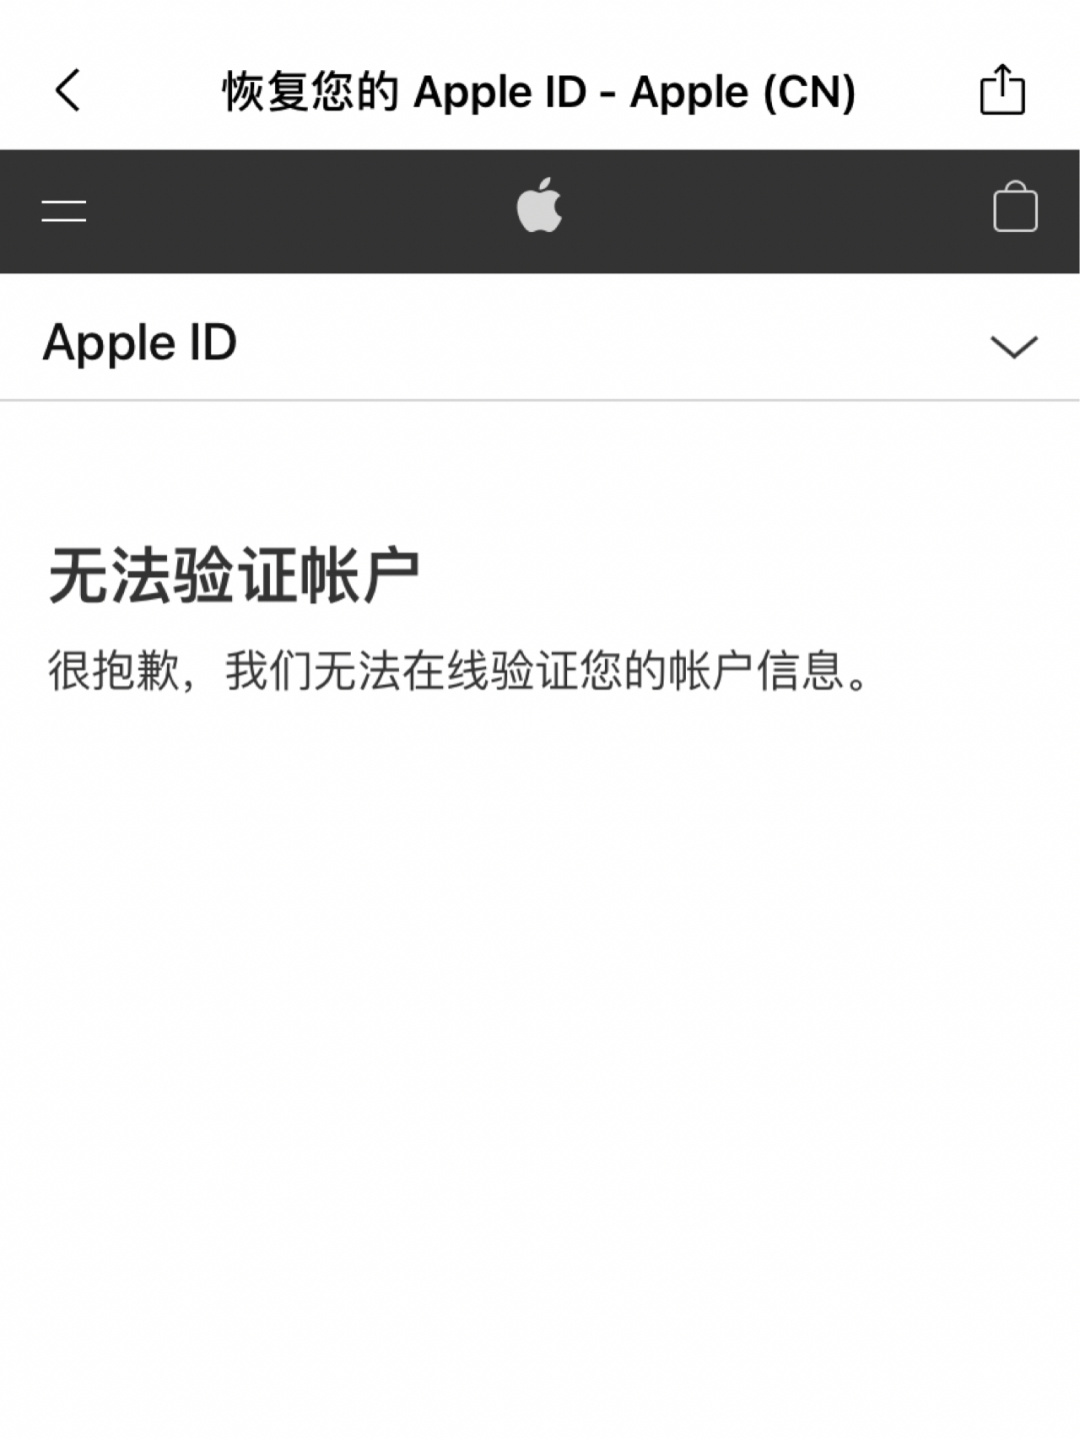 淘宝买海外苹果id_海外苹果id共享_自己注册海外id会被锁吗